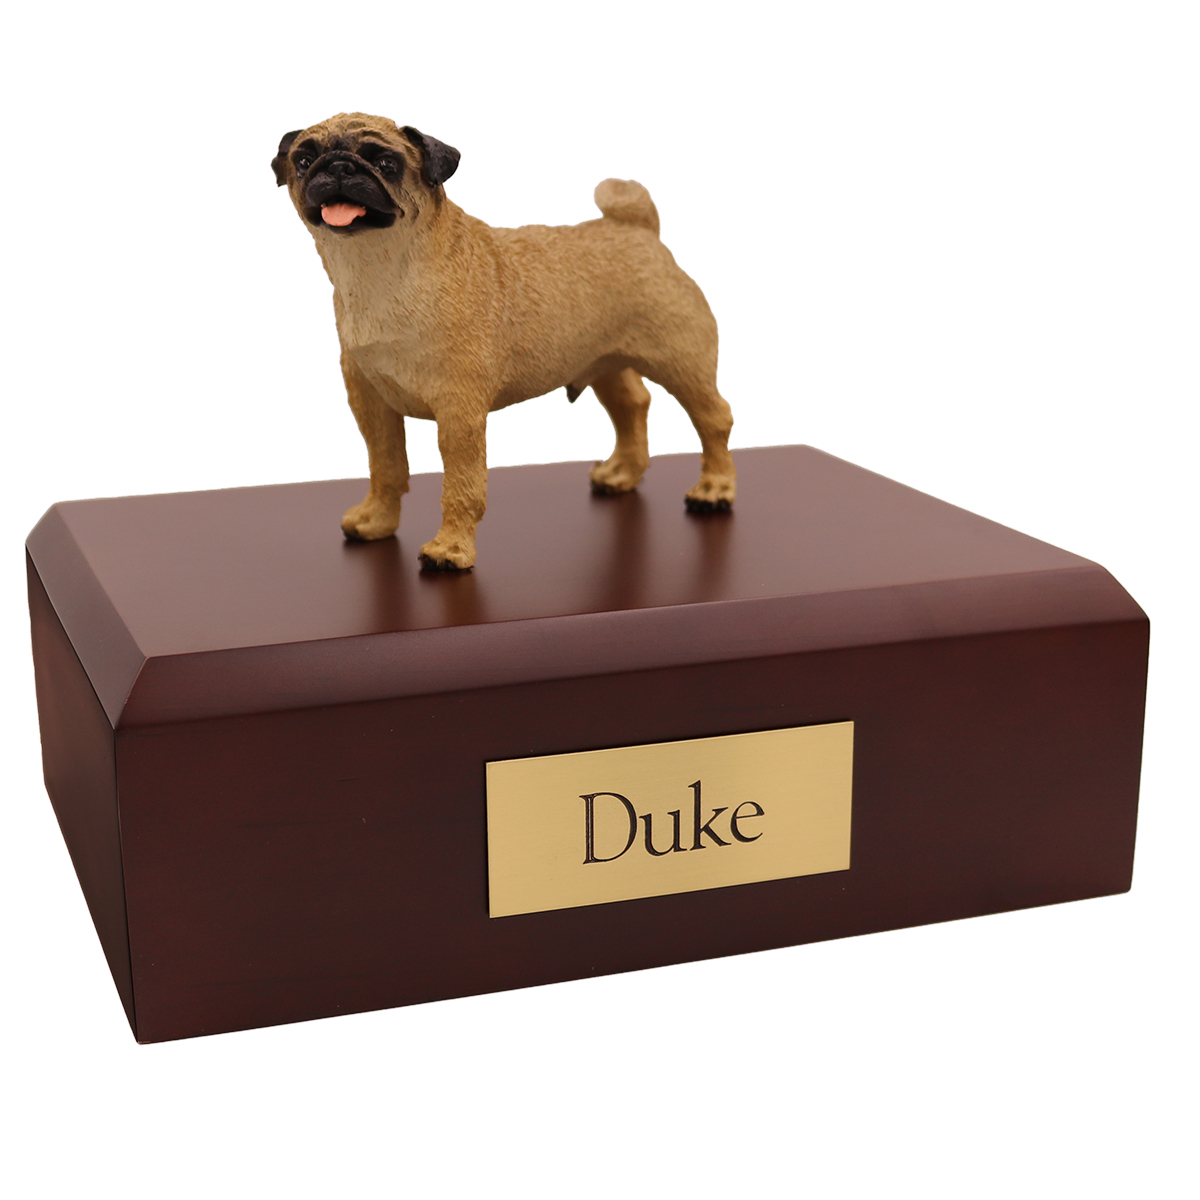 Dog, Pug - Figurine Urn